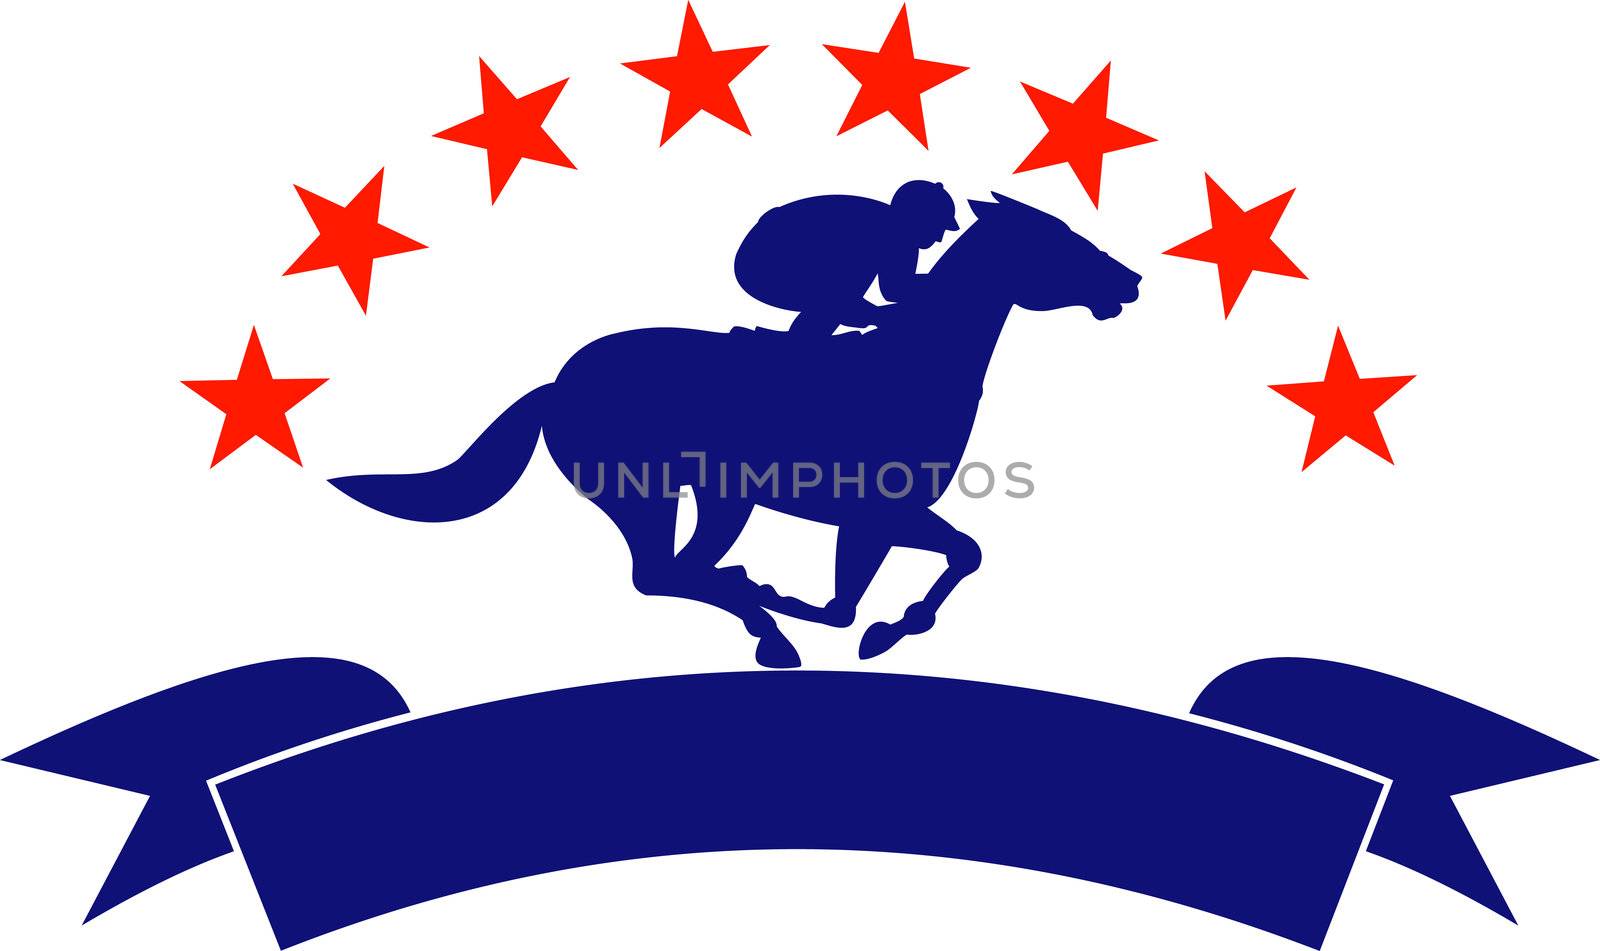 Horse and jockey racing silhouette stars by patrimonio